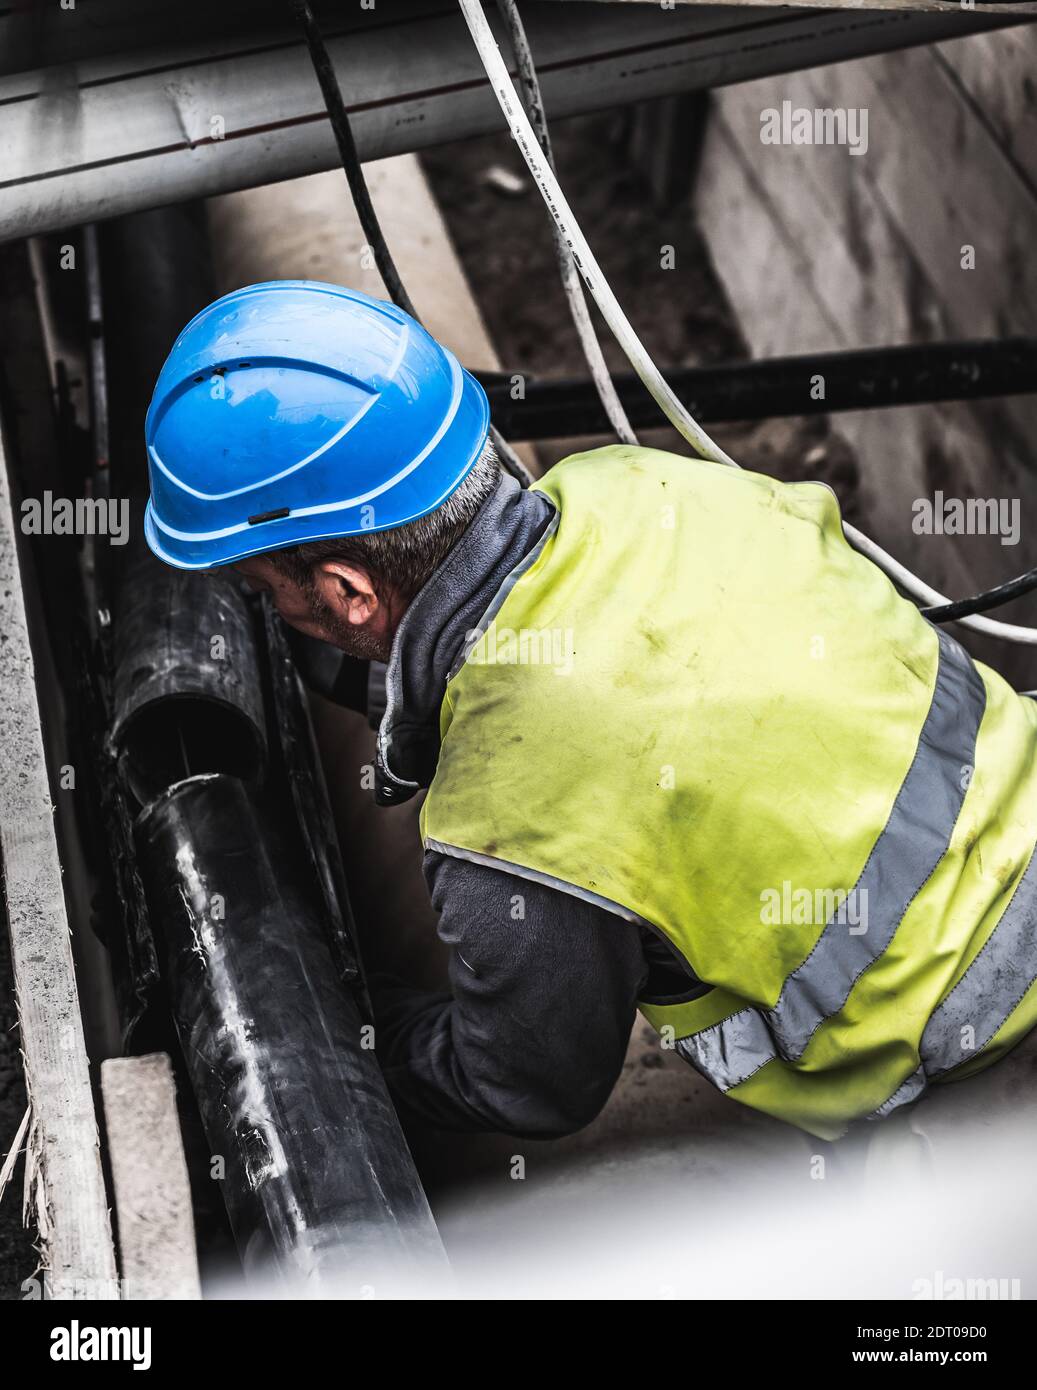 Montatore di tubi in uniforme gialla che lavora su un cantiere. Tubi di raccordo per lavoratori sotterranei, Ginevra, Svizzera. Foto Stock